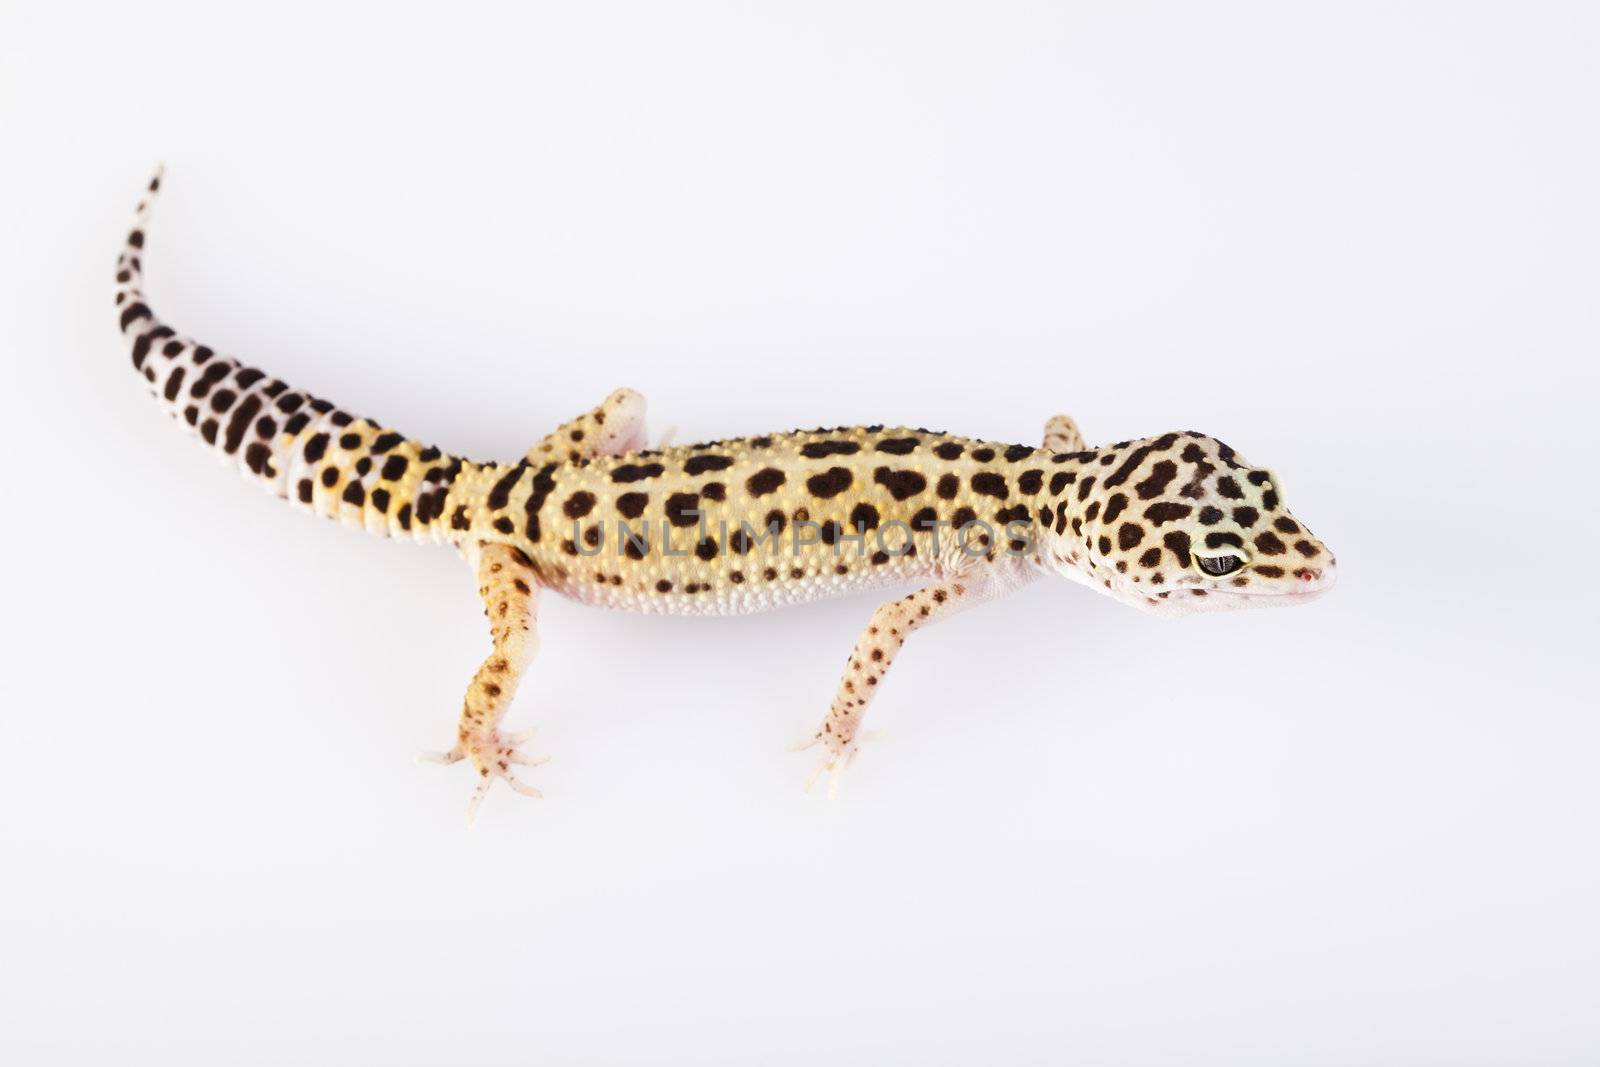 Leopard gecko by JanPietruszka